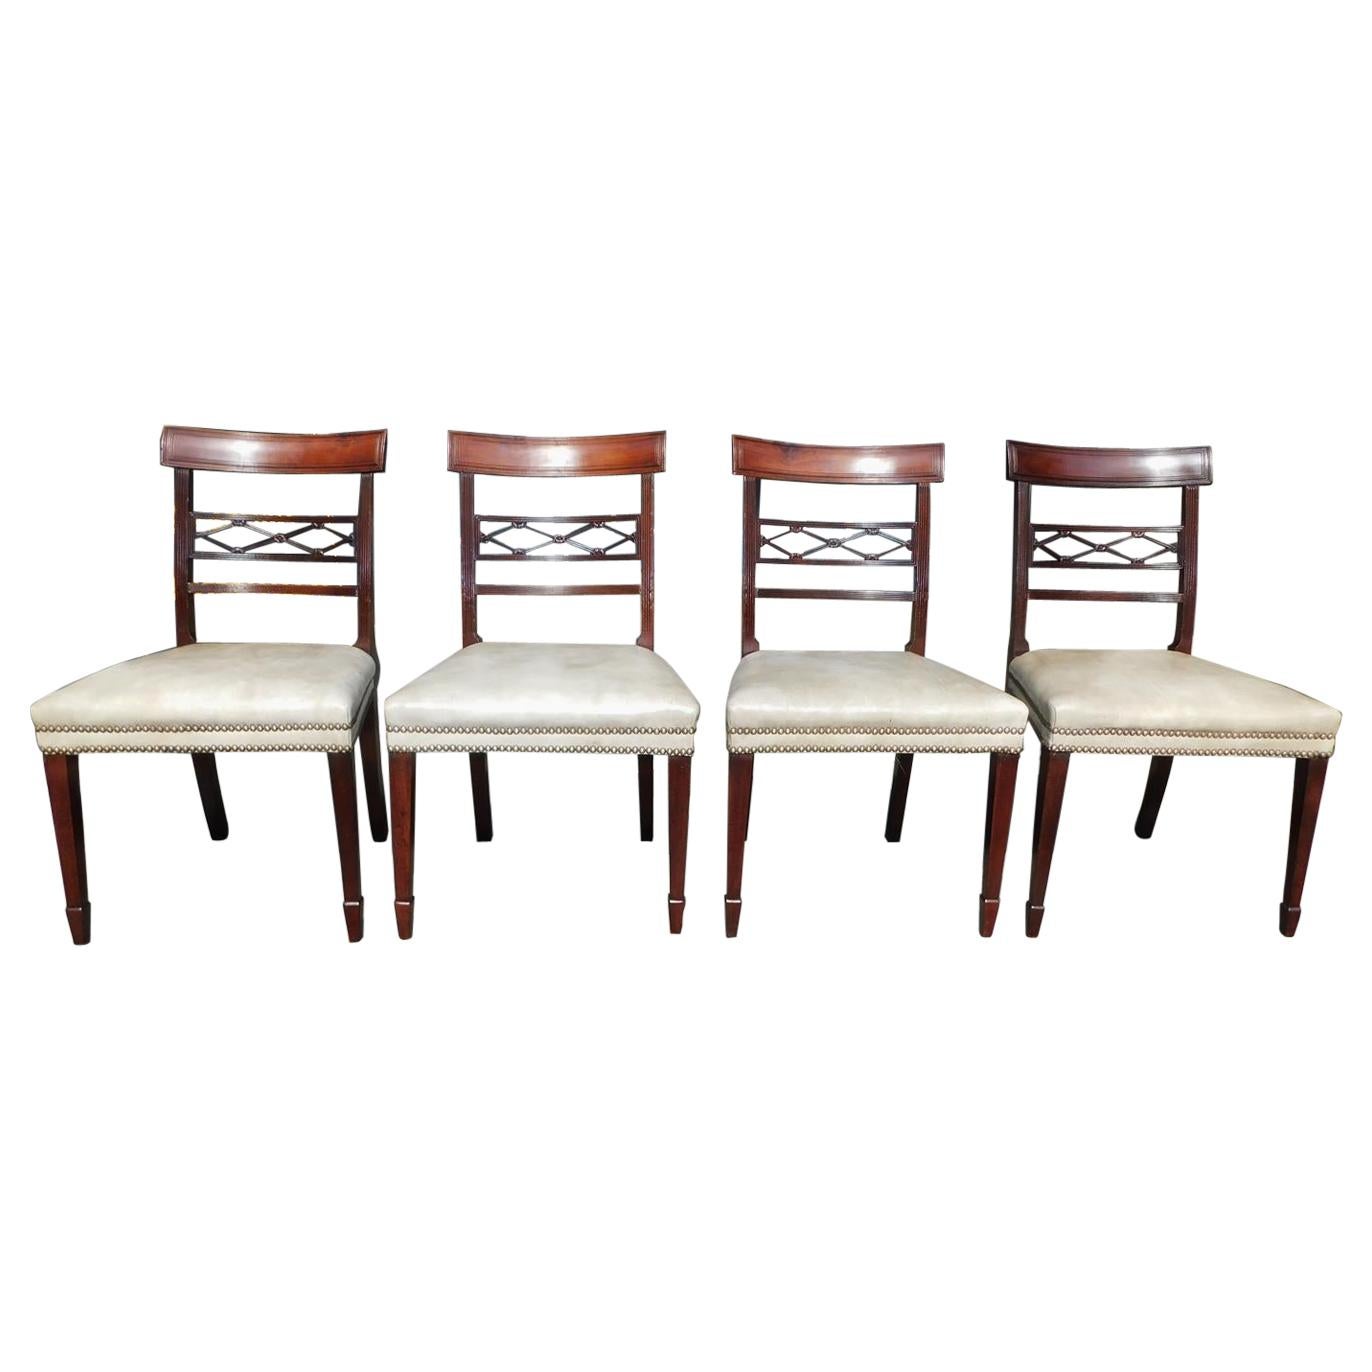 Ensemble de quatre chaises de salle à manger en acajou de style Regency anglaises, vers 1810